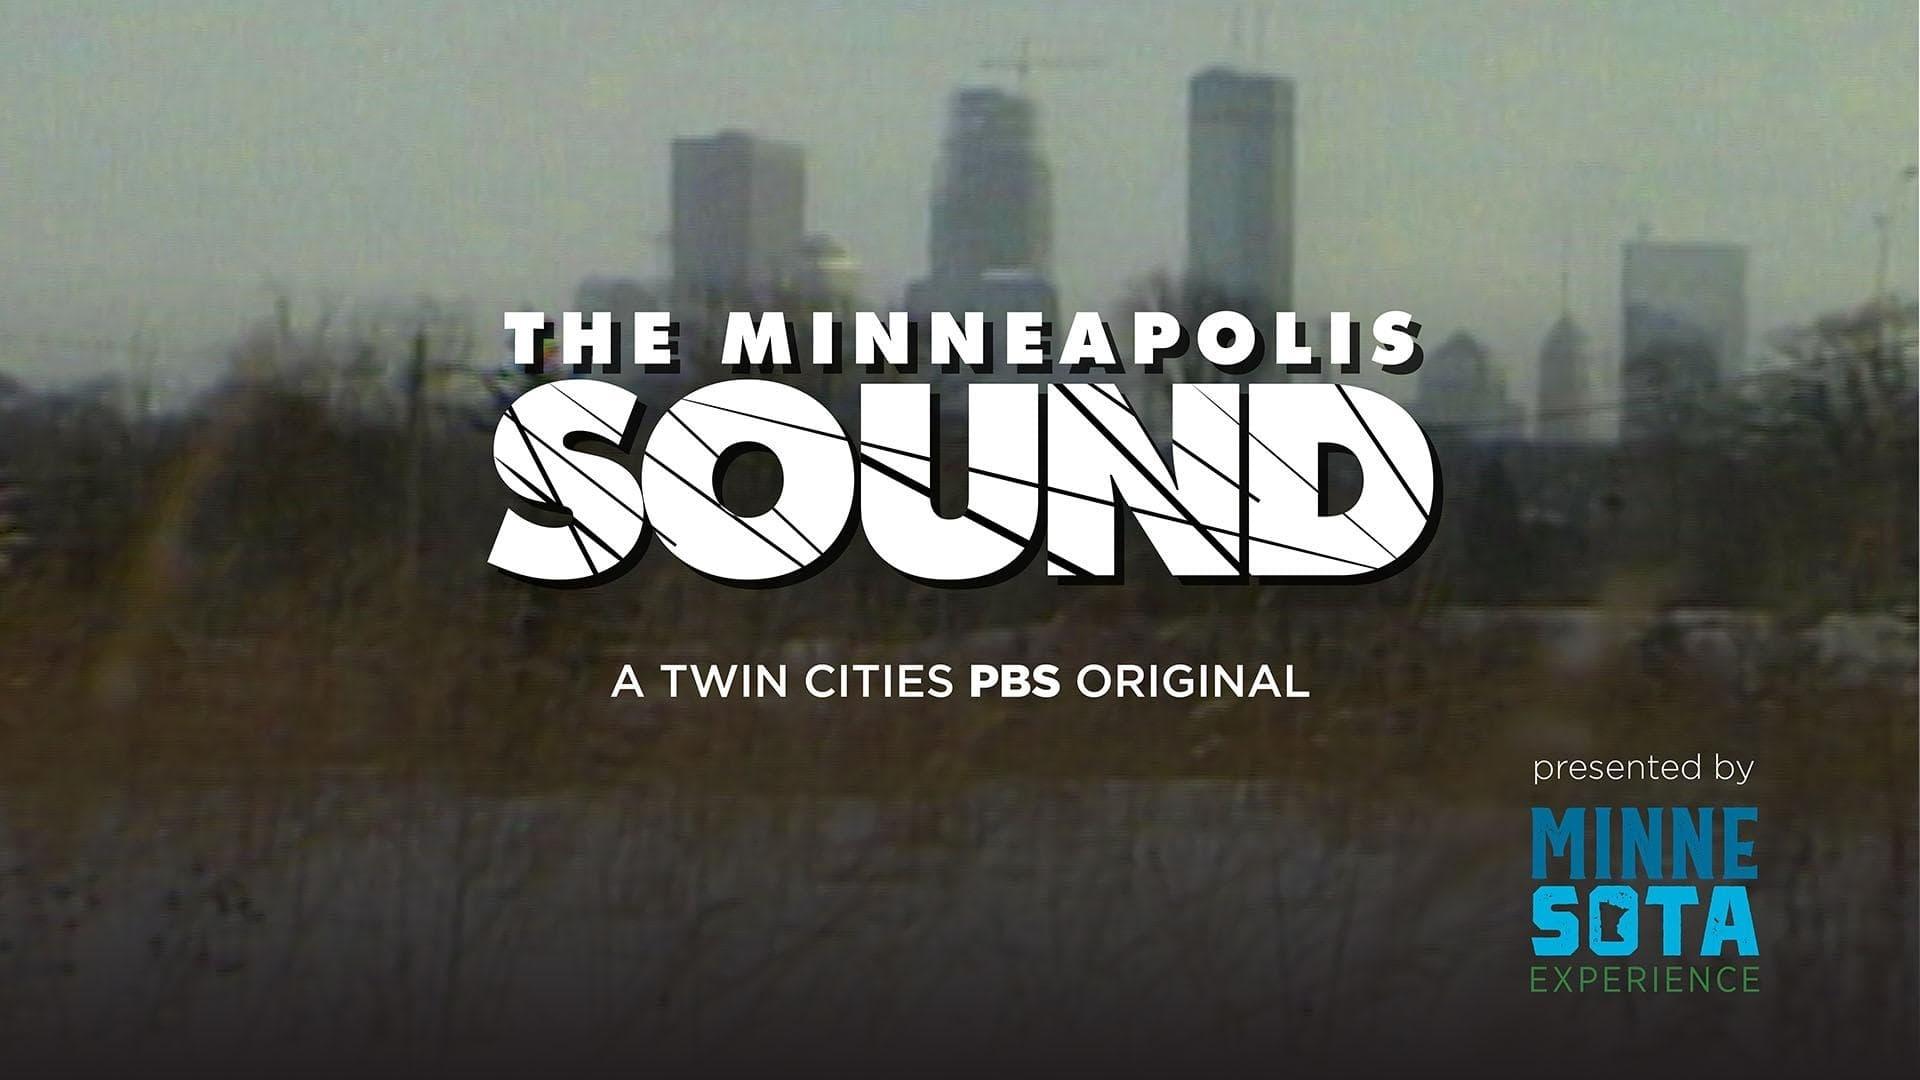 The Minnesota Sound backdrop